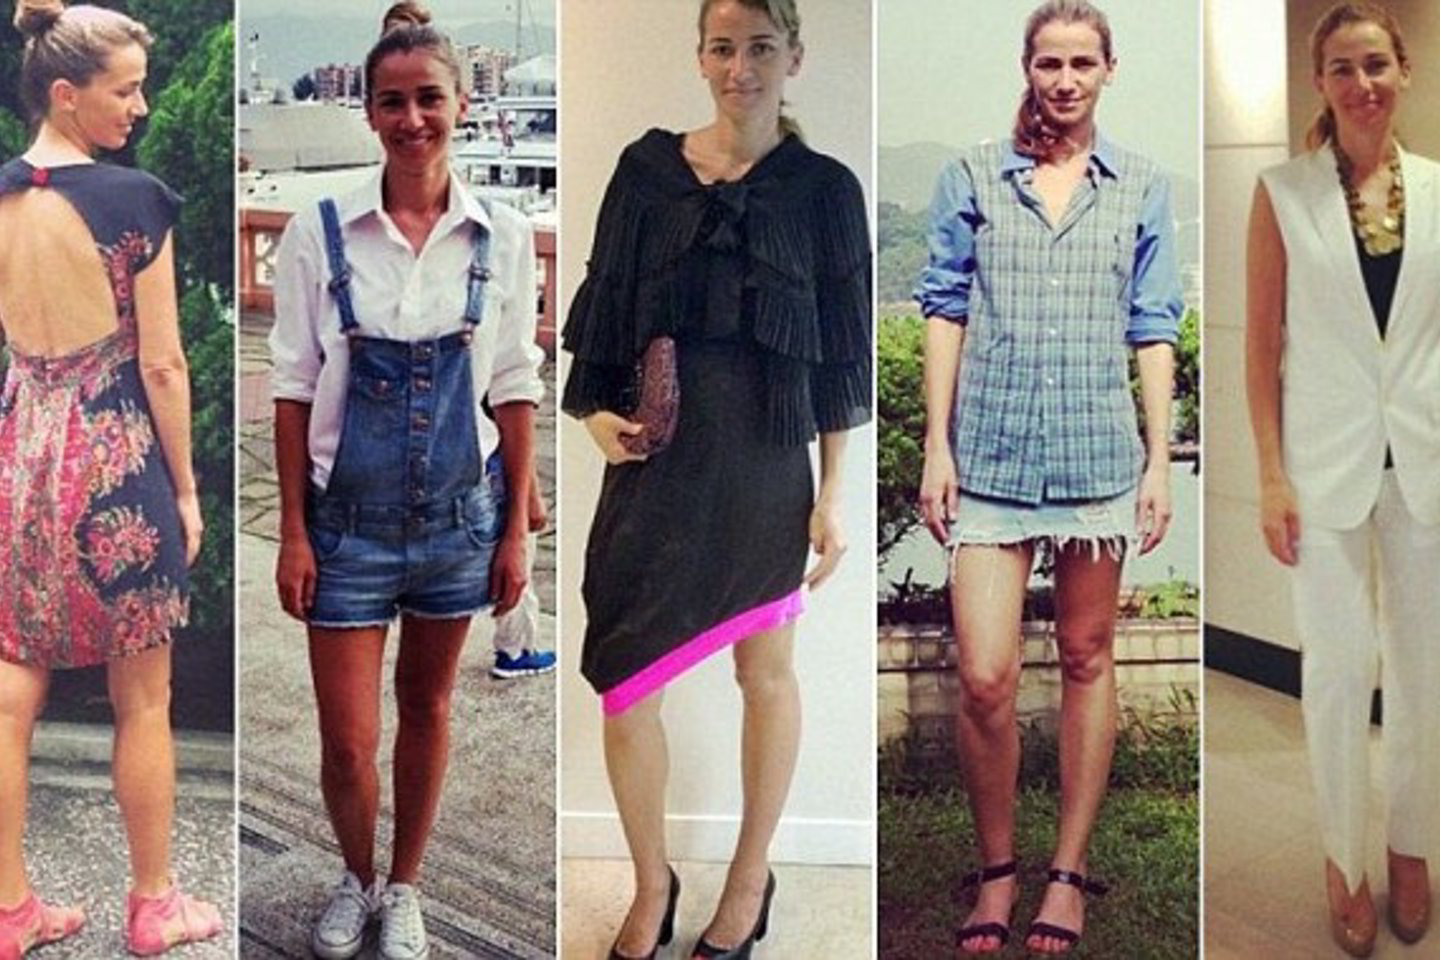 365 dienas vilkėti tik dėvėtus kitų žmonių drabužius - tokį tikslą sau užsibrėžė Christina Dean.<br>"Instagram" nuotr.